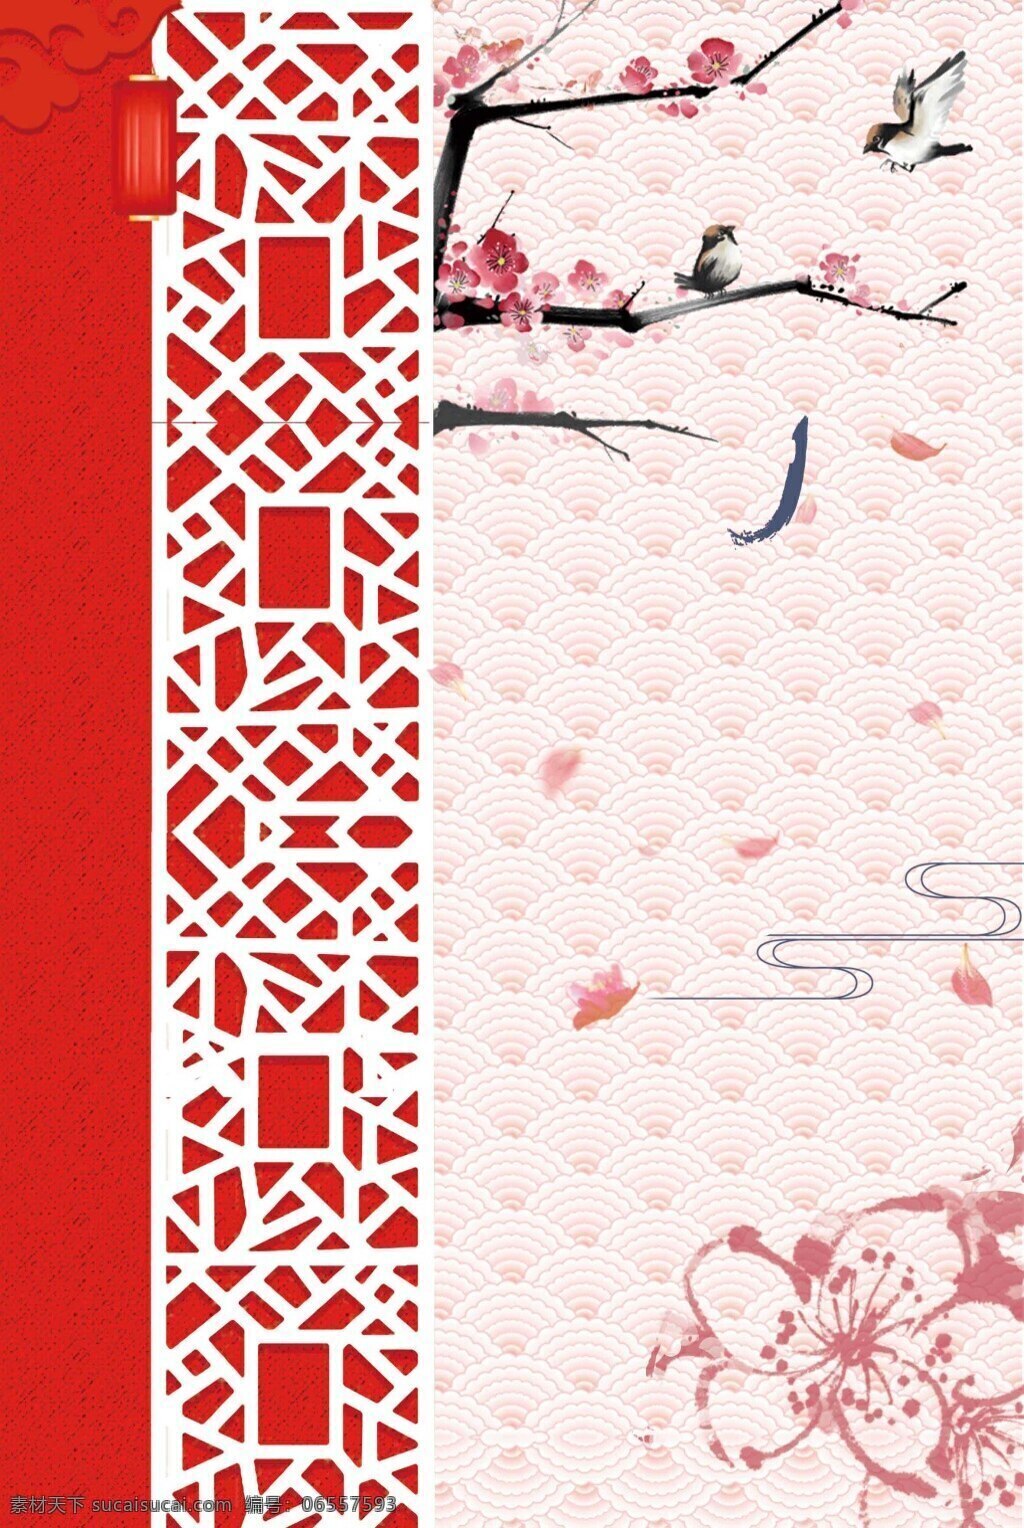 中国 风 灯笼 边框 背景 广告 海报 花瓣 浪漫 水墨 纹理 中国风